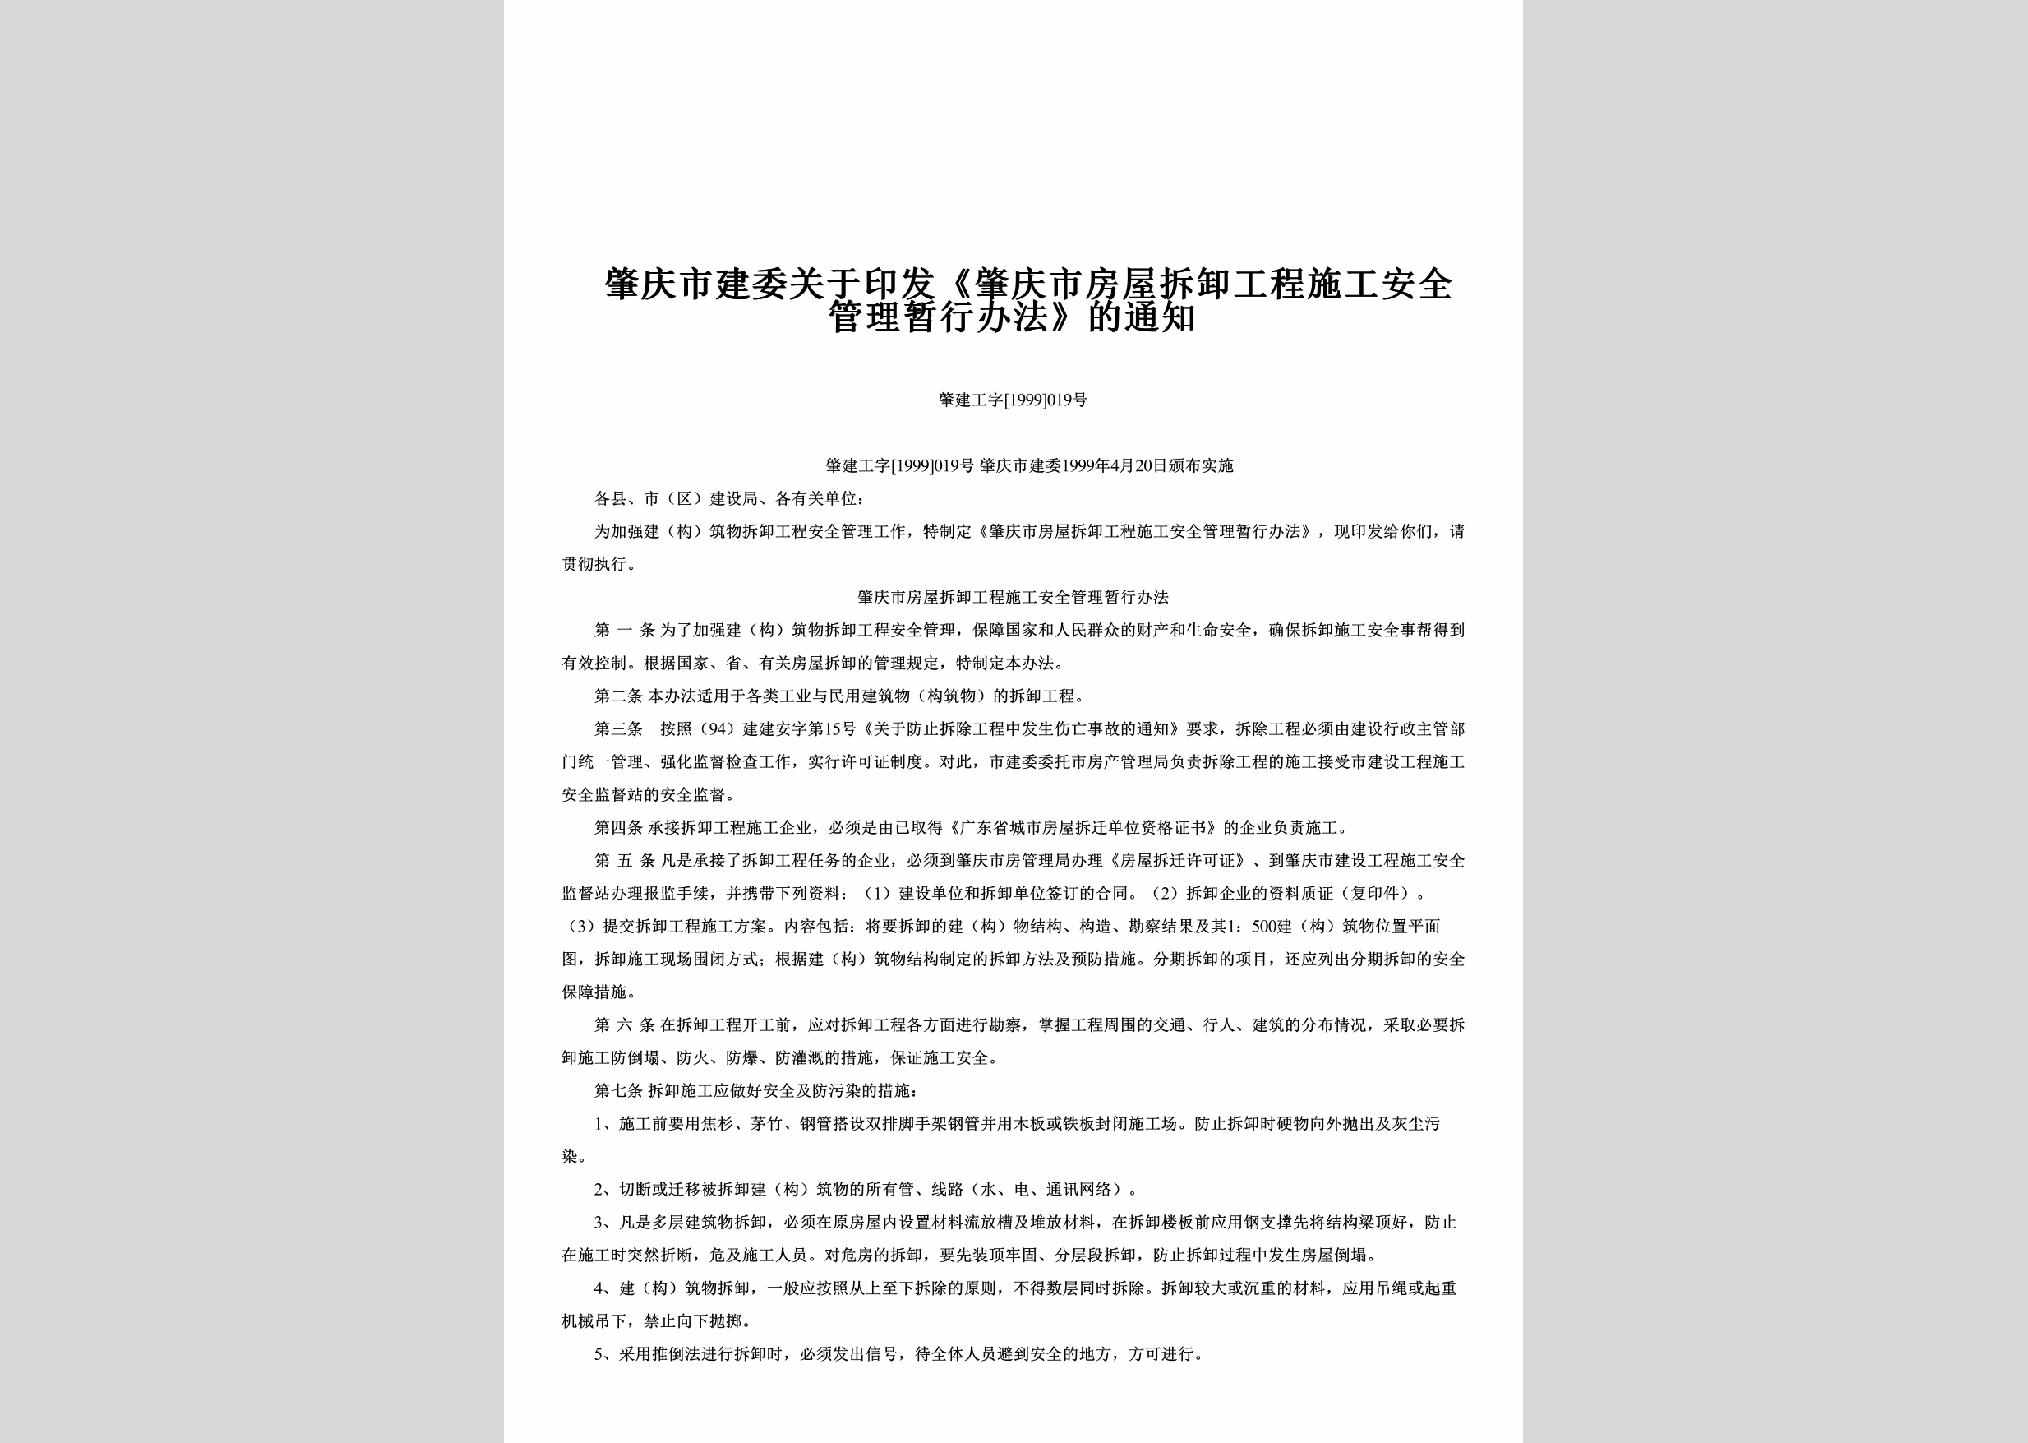 肇建工字[1999]019号：关于印发《肇庆市房屋拆卸工程施工安全管理暂行办法》的通知